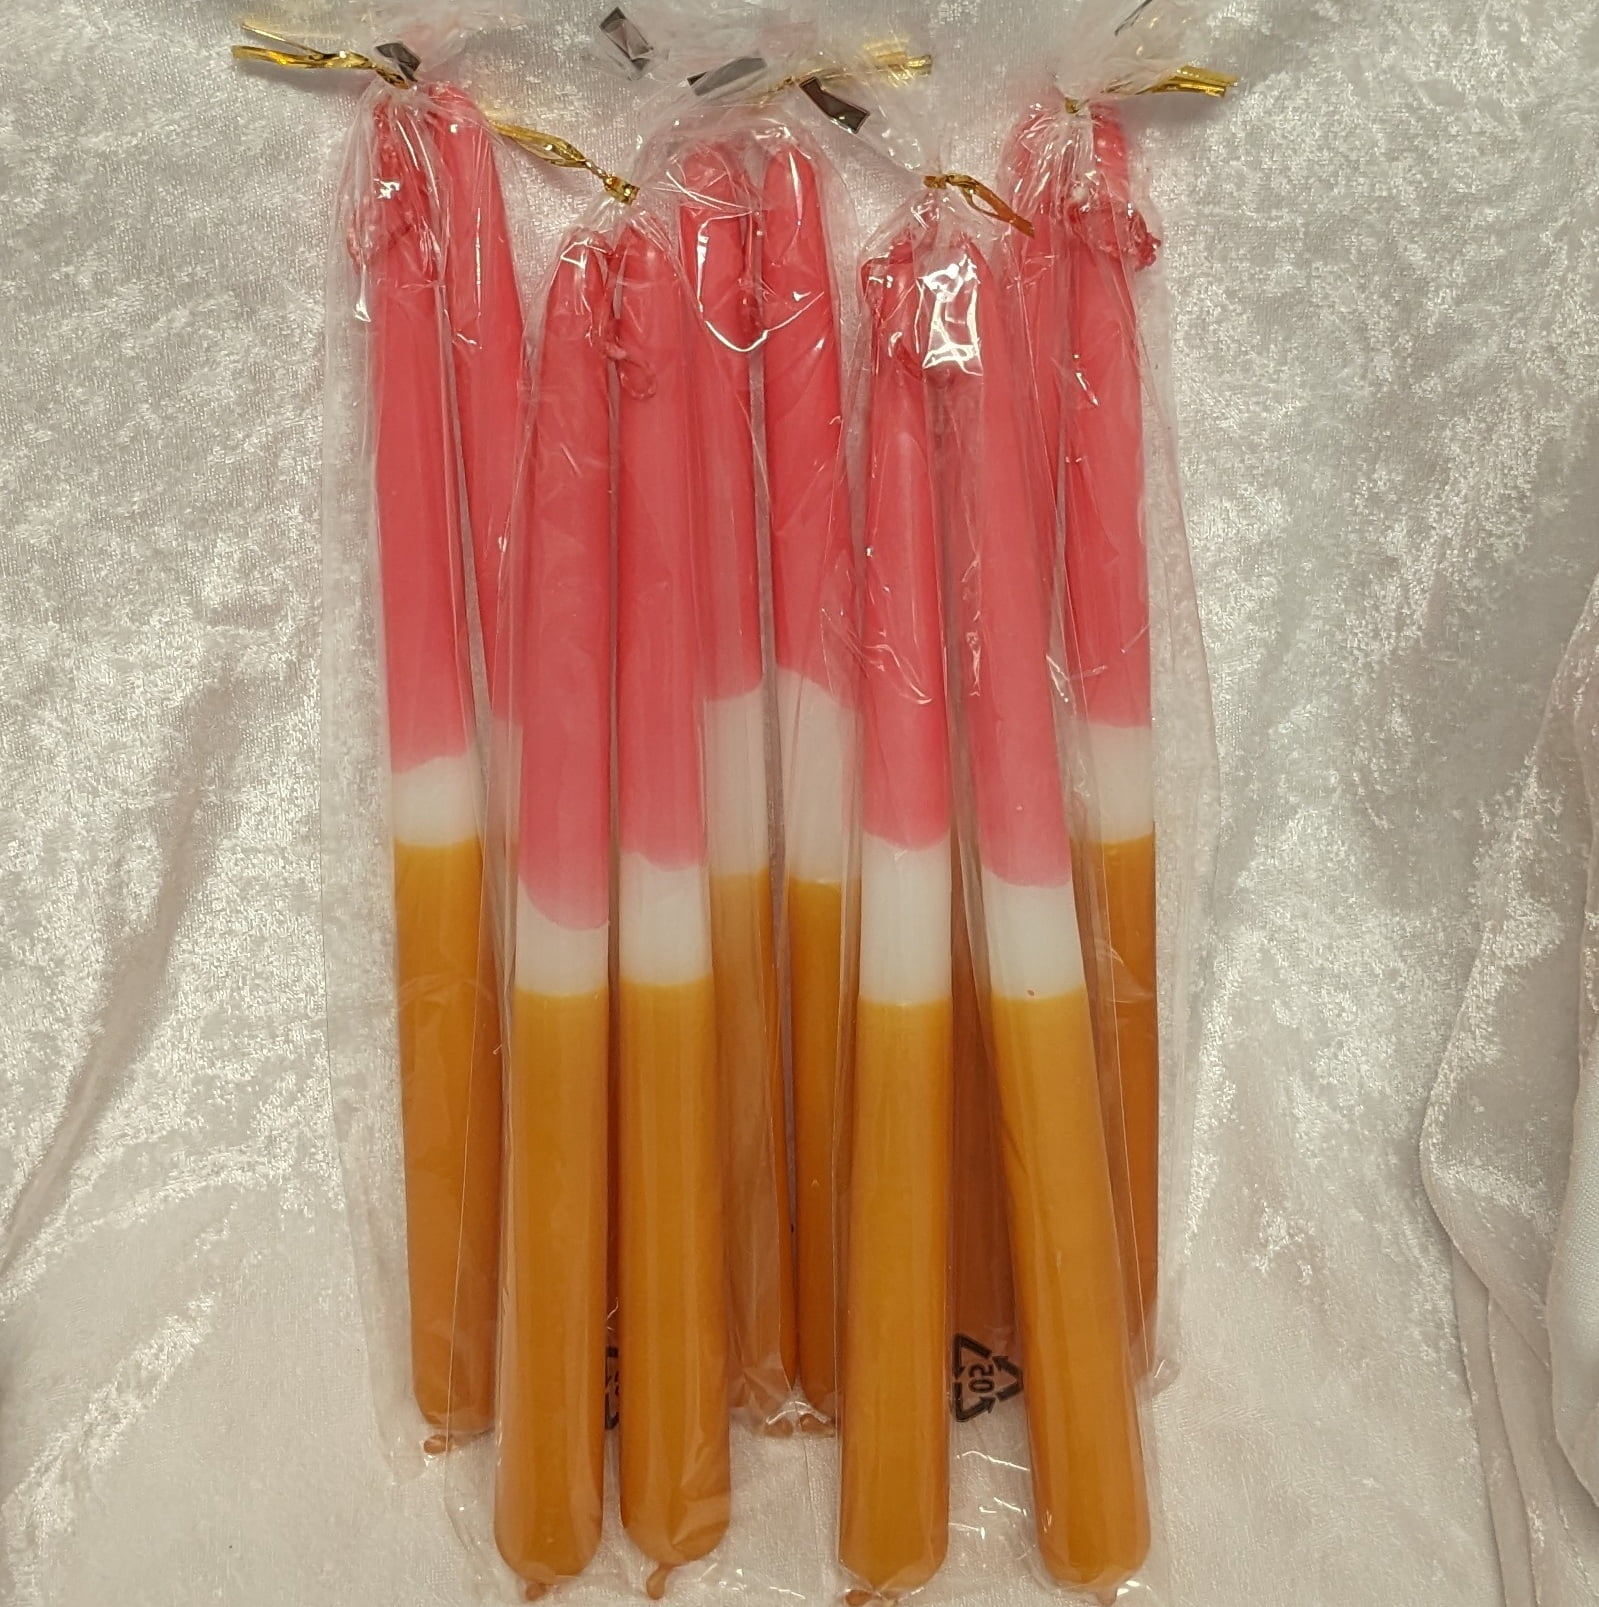 trefarvede dyppede stagelys i farverne cheddar, hvid og pink på 30 centimeter køb 5 par